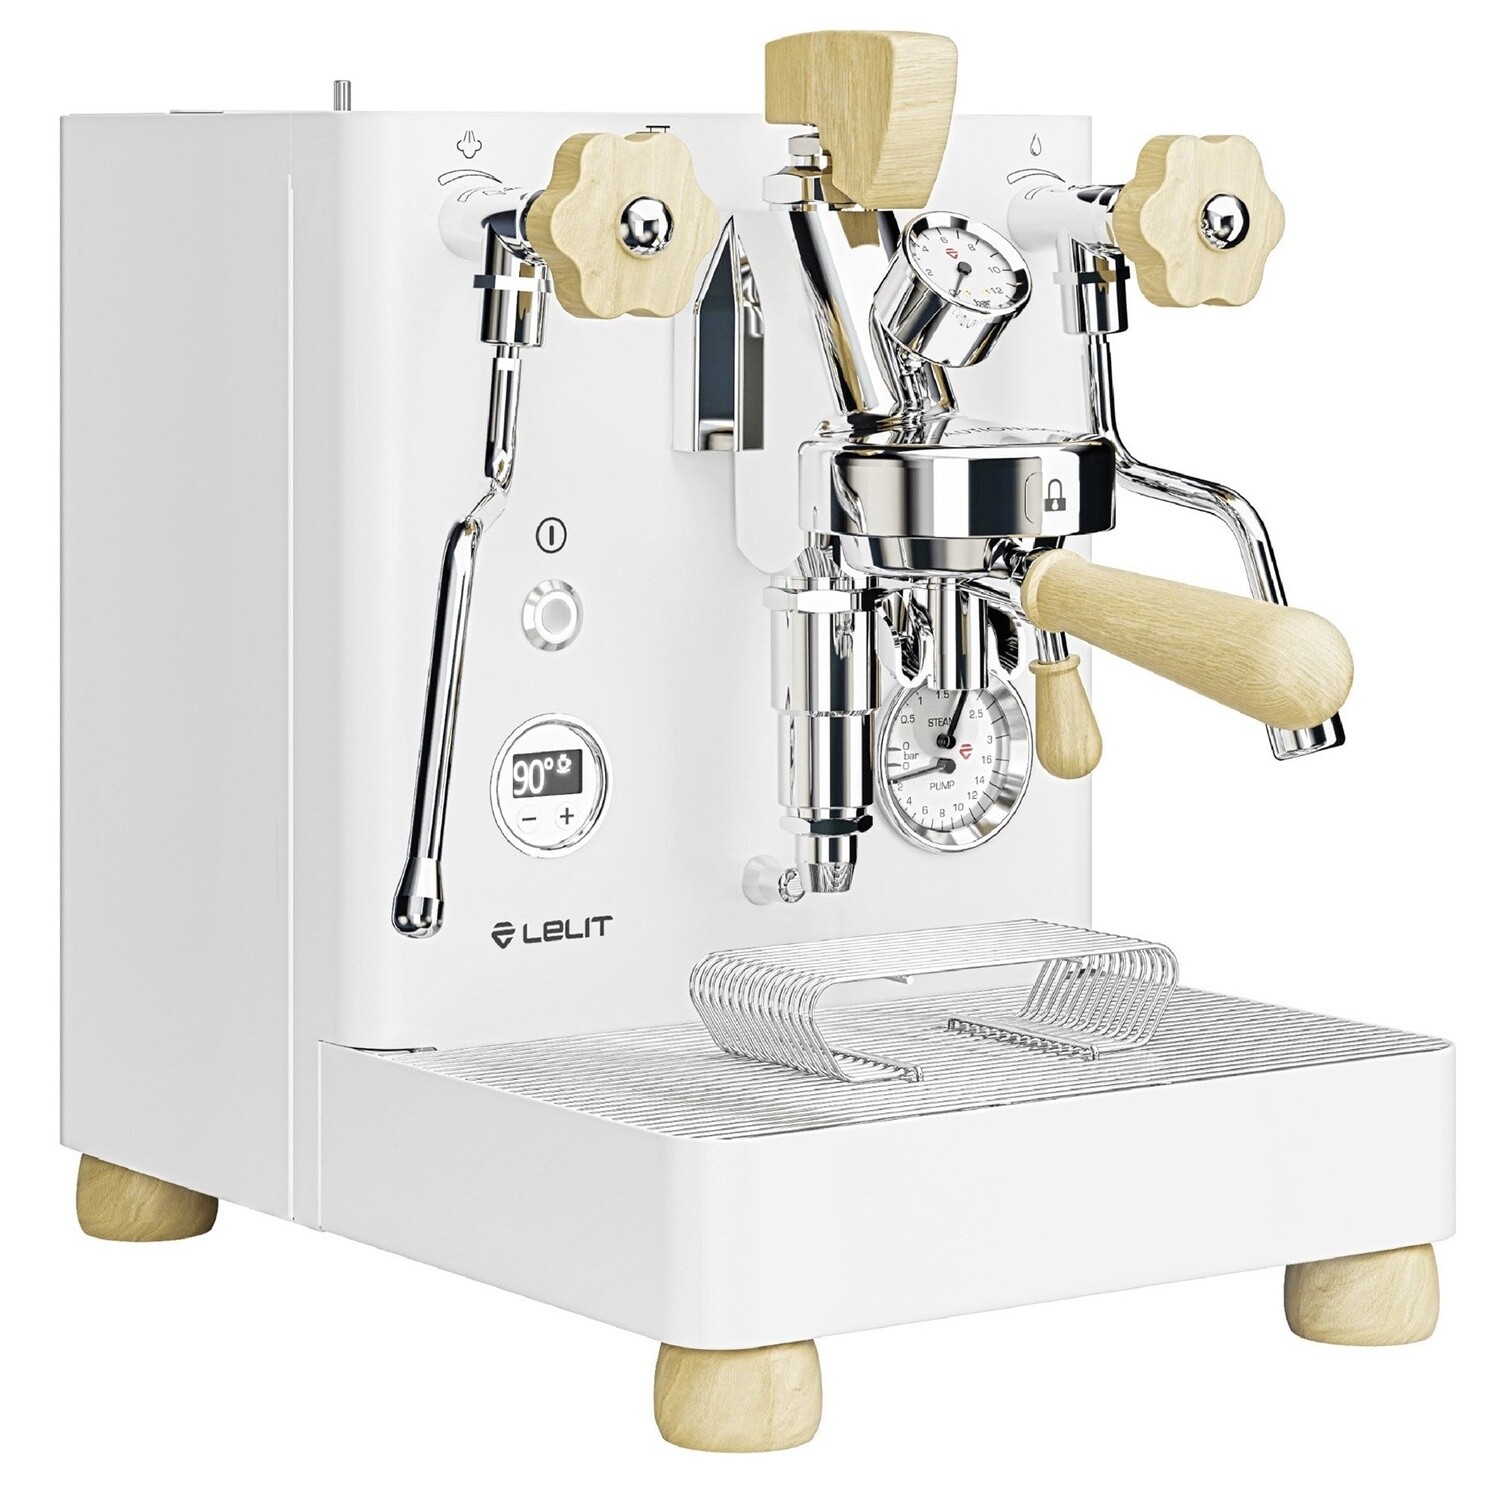 Lelit Bianca PL162TCW White Espresso Machine